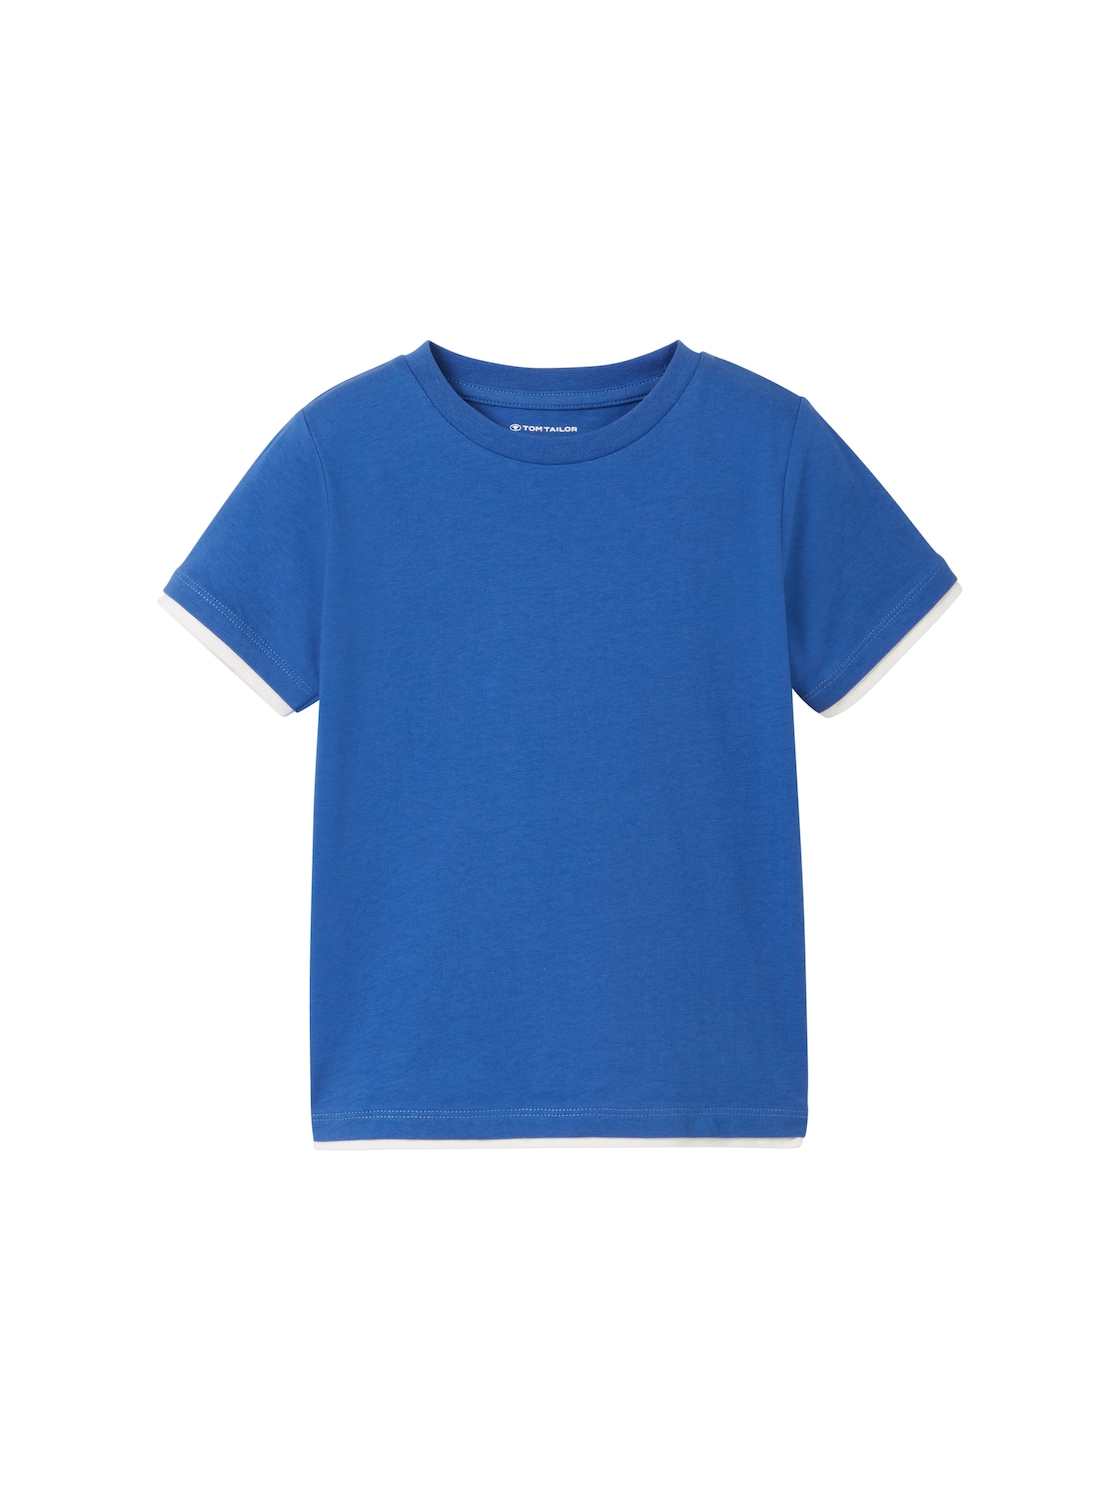 TOM TAILOR Jungen 2-in-1 T-Shirt, blau, Uni, Gr. 116/122 von Tom Tailor